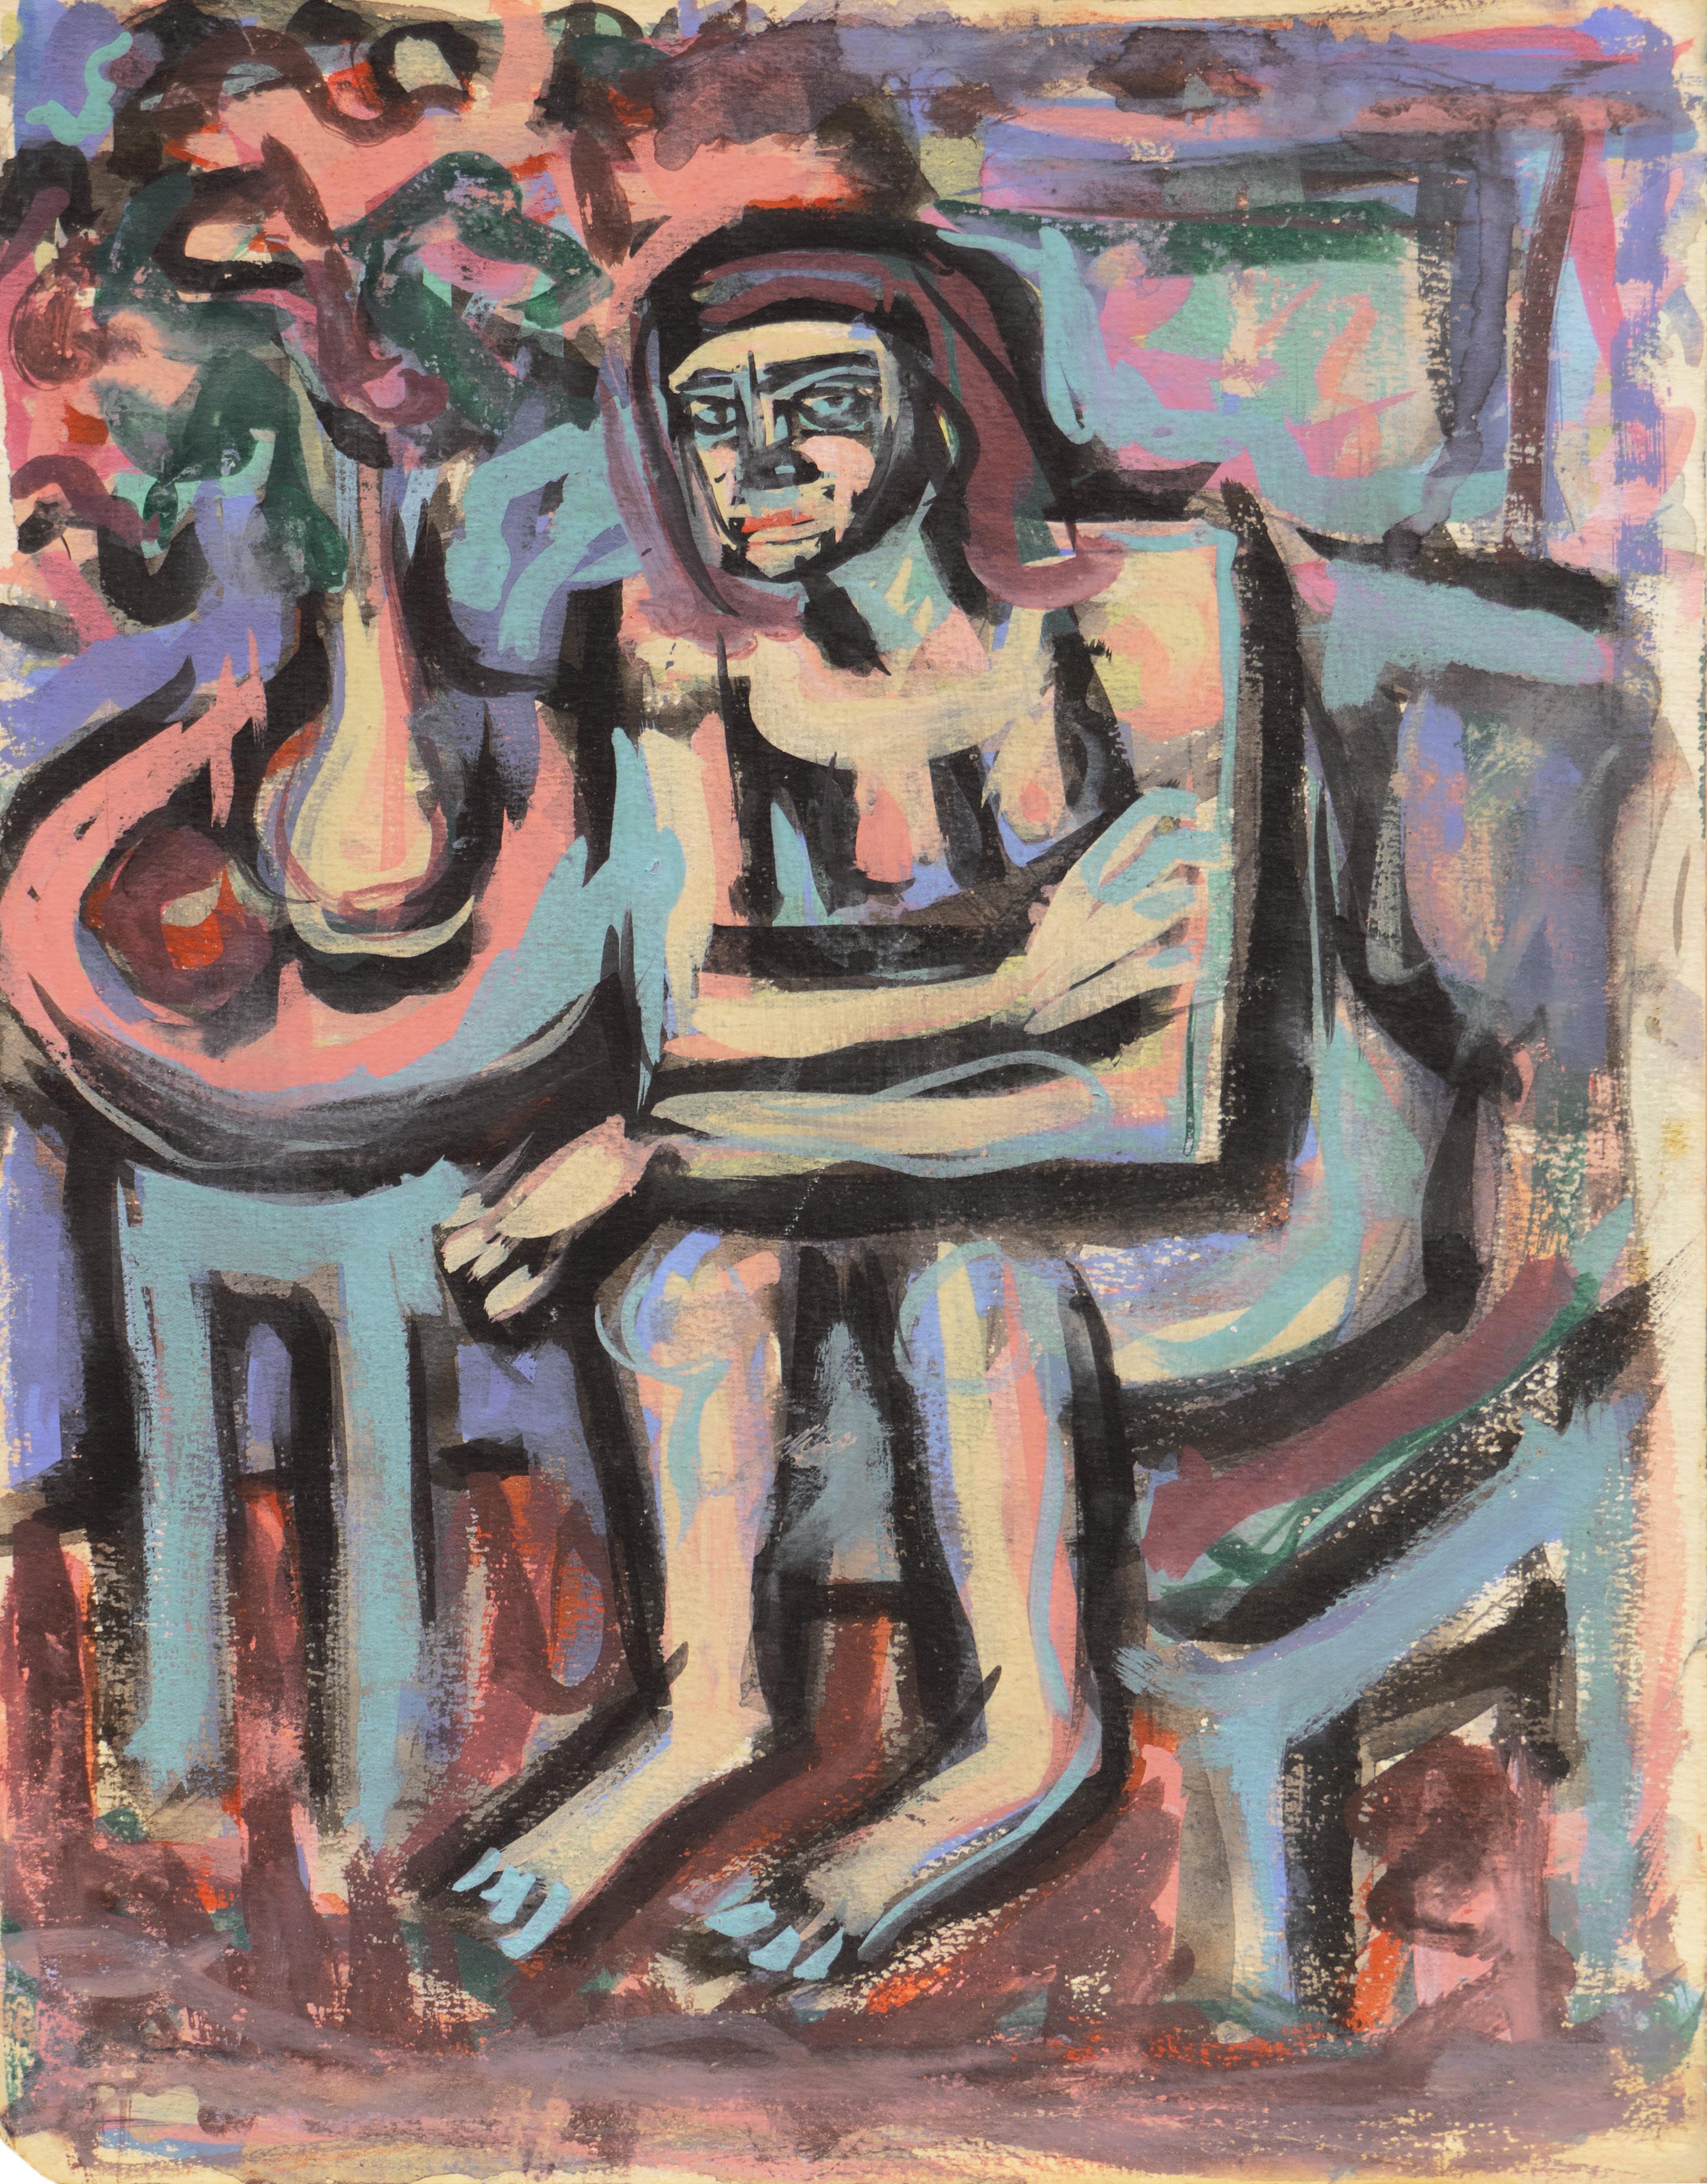 Victor Di Gesu Nude Painting - 'Seated Nude', Paris, Louvre, Salon d'Automne, Académie Chaumière, LACMA, SFAA 